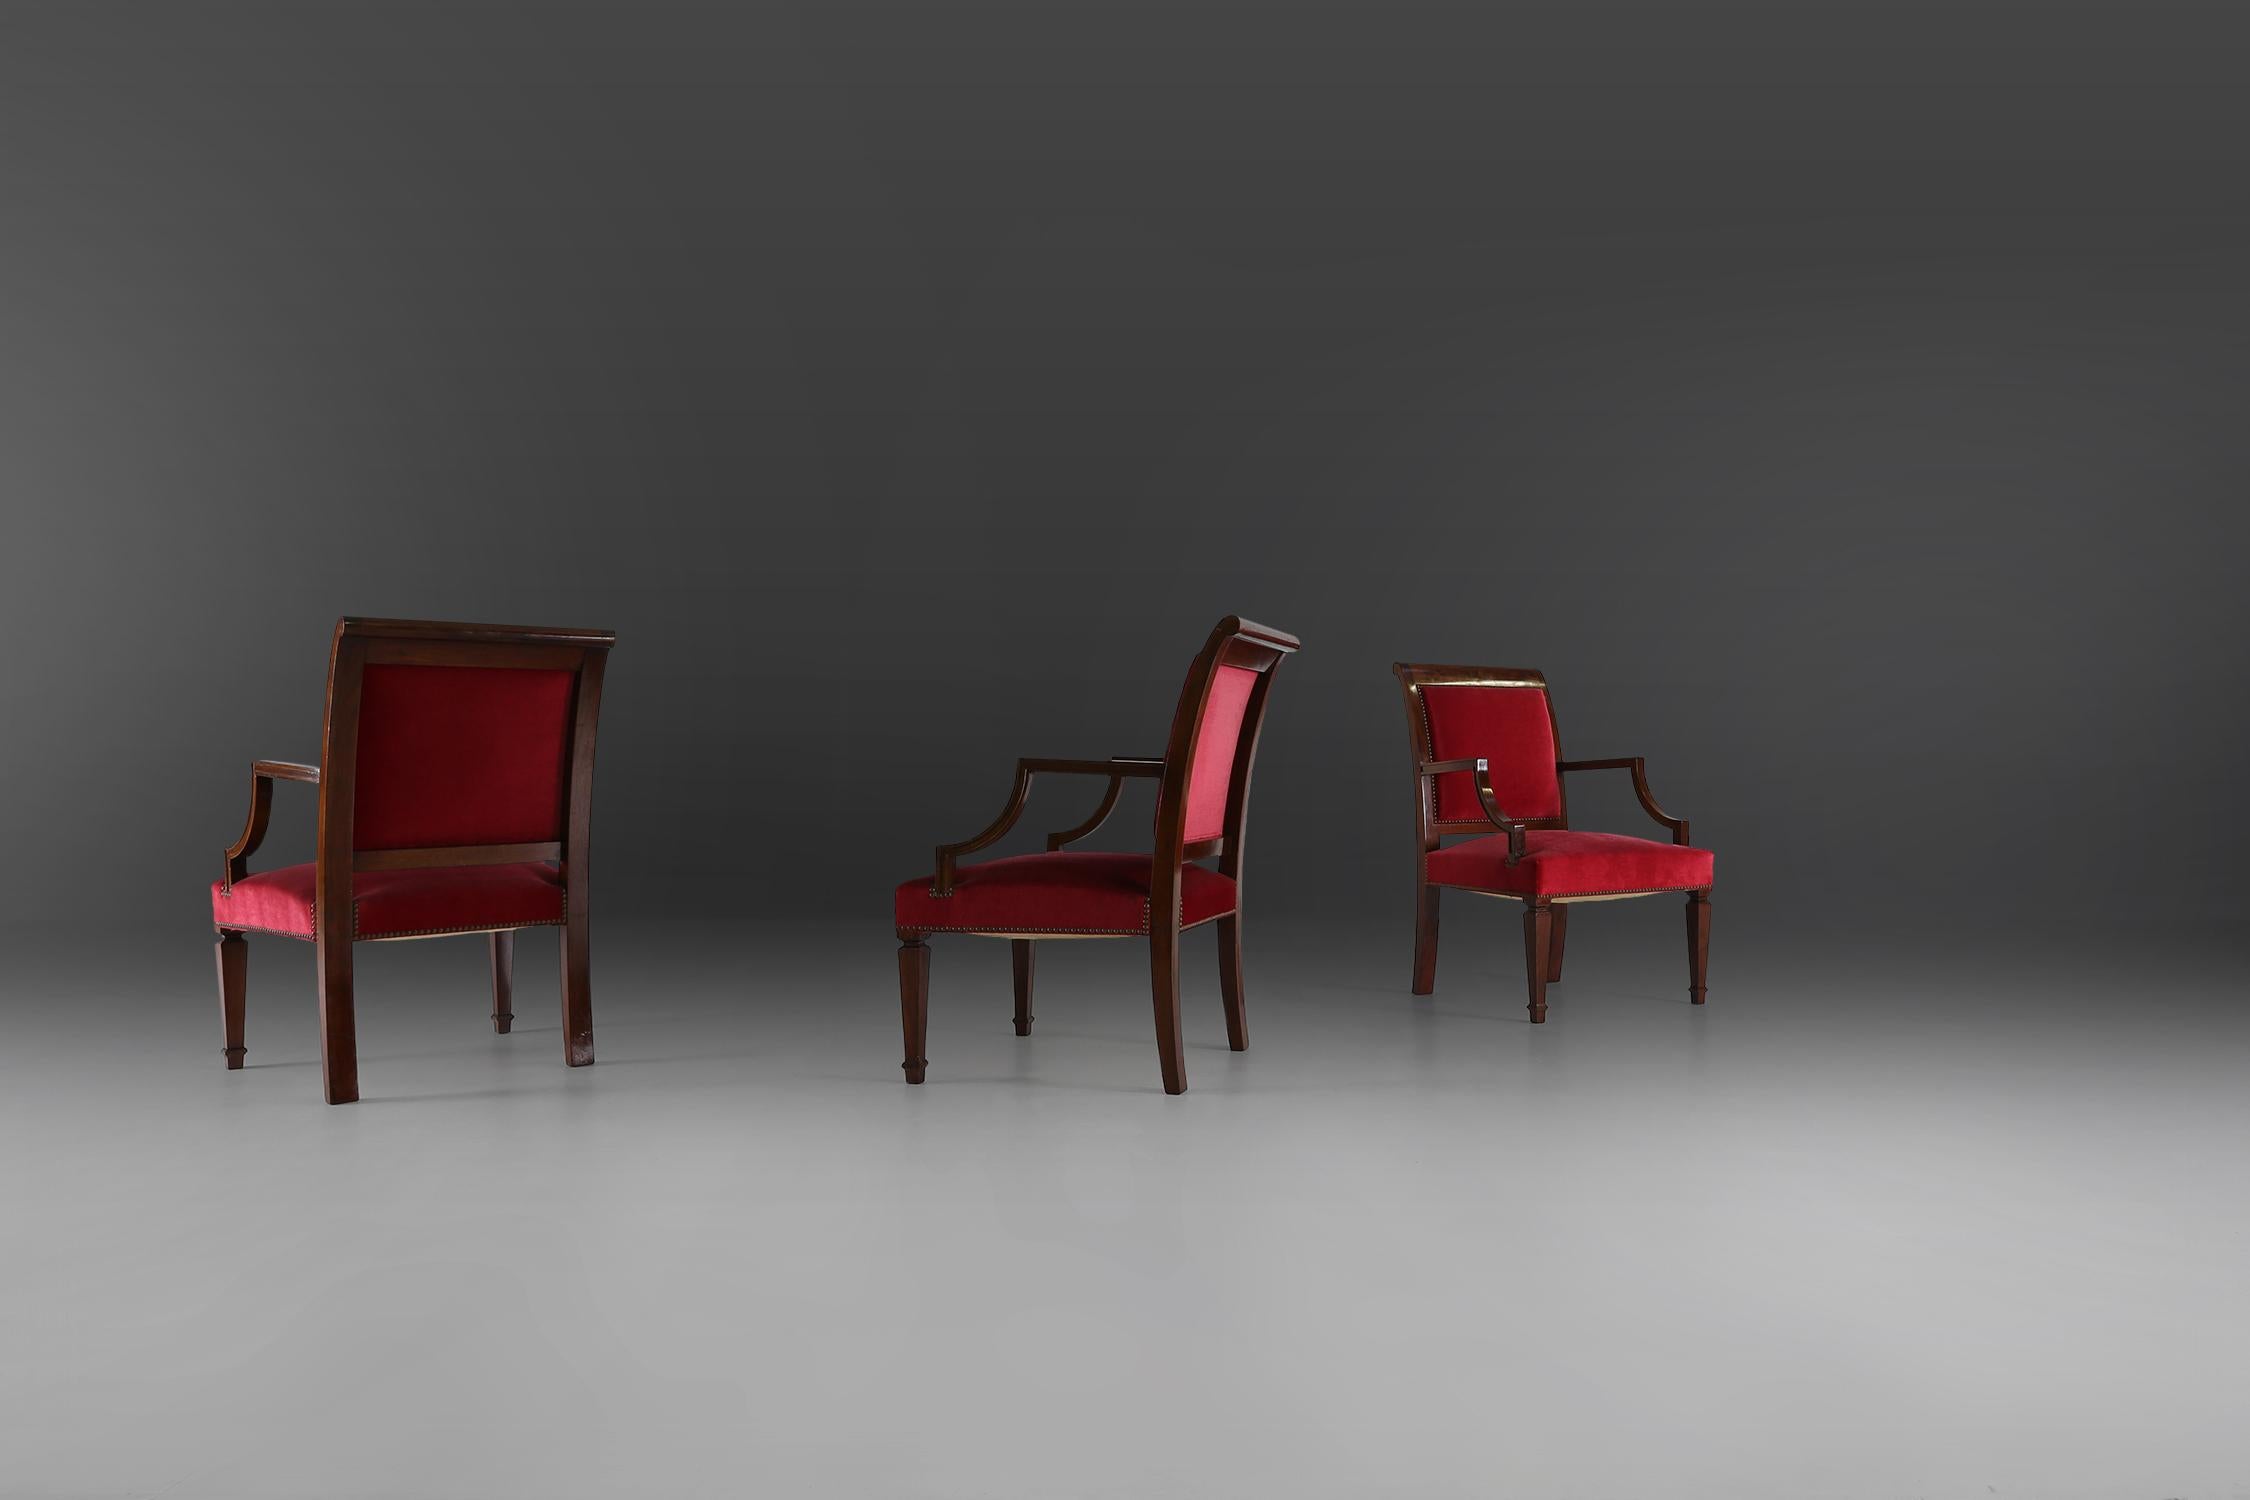 Empire-Stil Stühle aus hochwertigem Holz und rotem Stoff. in einem sehr guten Zustand.

PREIS PRO STÜCK.